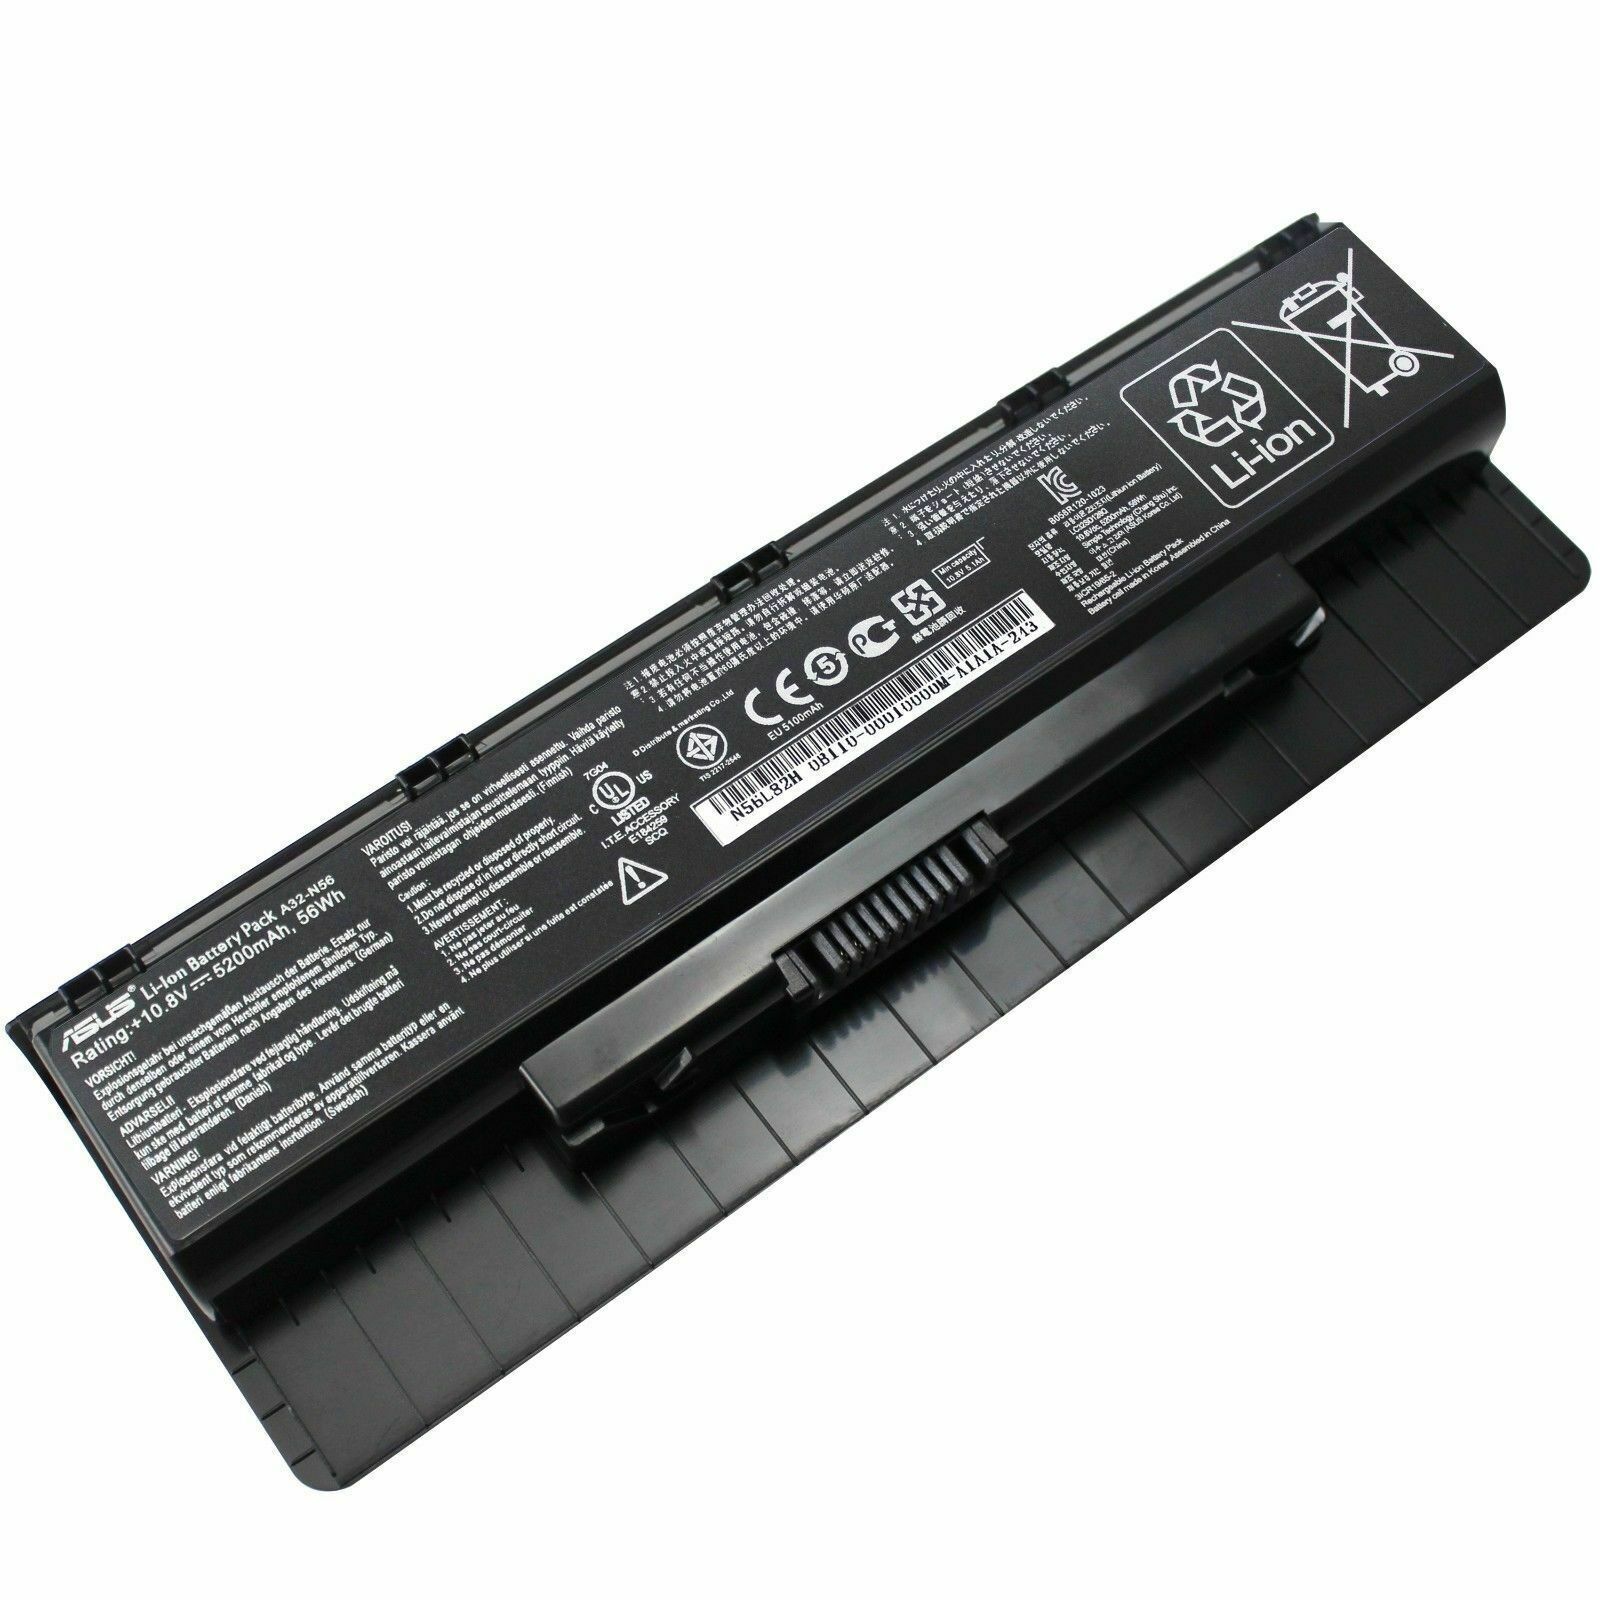 Original A32-N56 Battery For ASUS N46 N46V N46VJ N46VM N46VZ N56 N56V A31-N56 